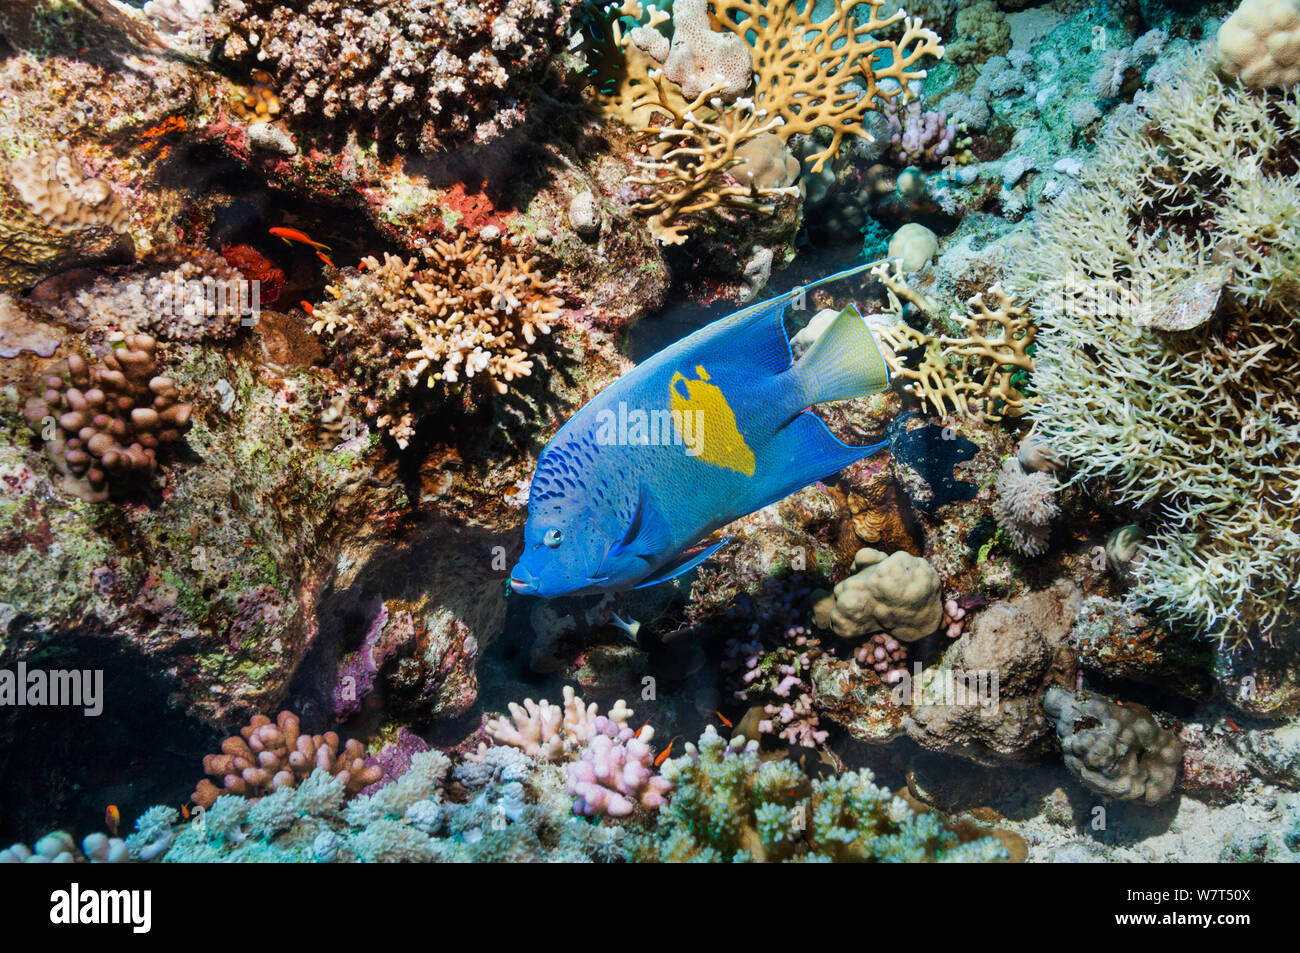 Yellowbar angelfish Pomacanthus maculosus (natation) sur les récifs coralliens. L'Egypte, Mer Rouge. Banque D'Images